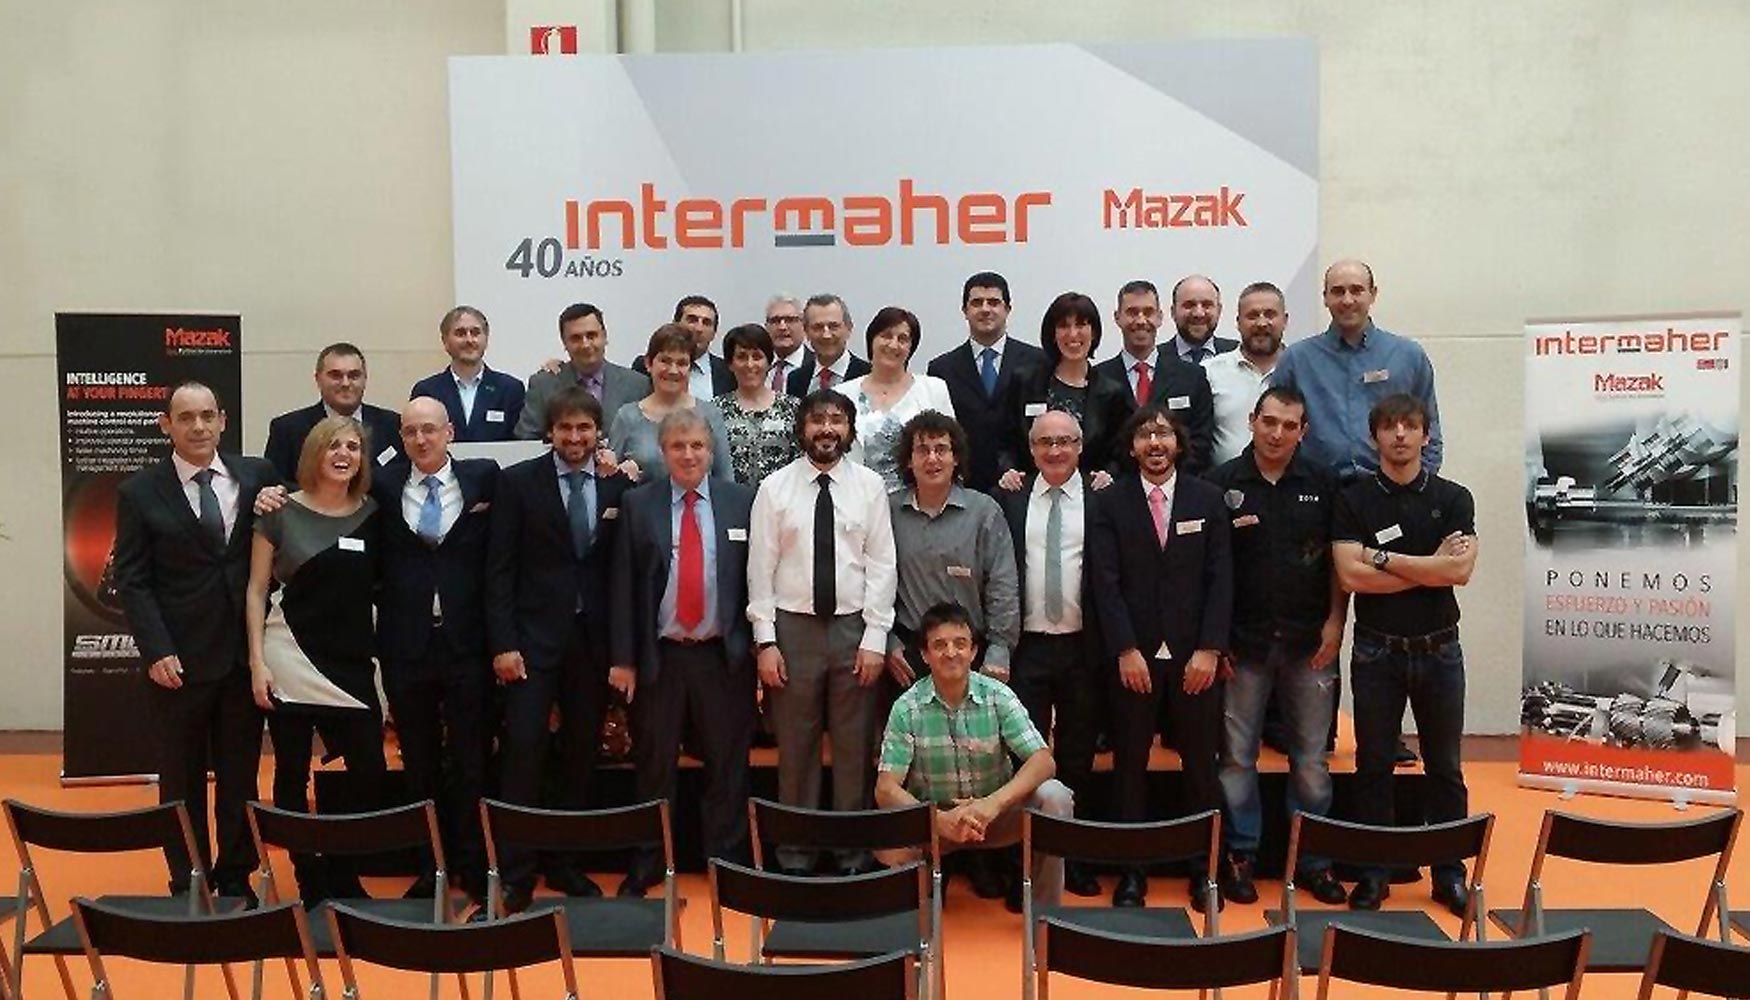 Dedicacin 100% a Mazak, un equipo humano experimentado y dedicado, buscar el mejor servicio y la mxima rentabilidad para sus clientes...